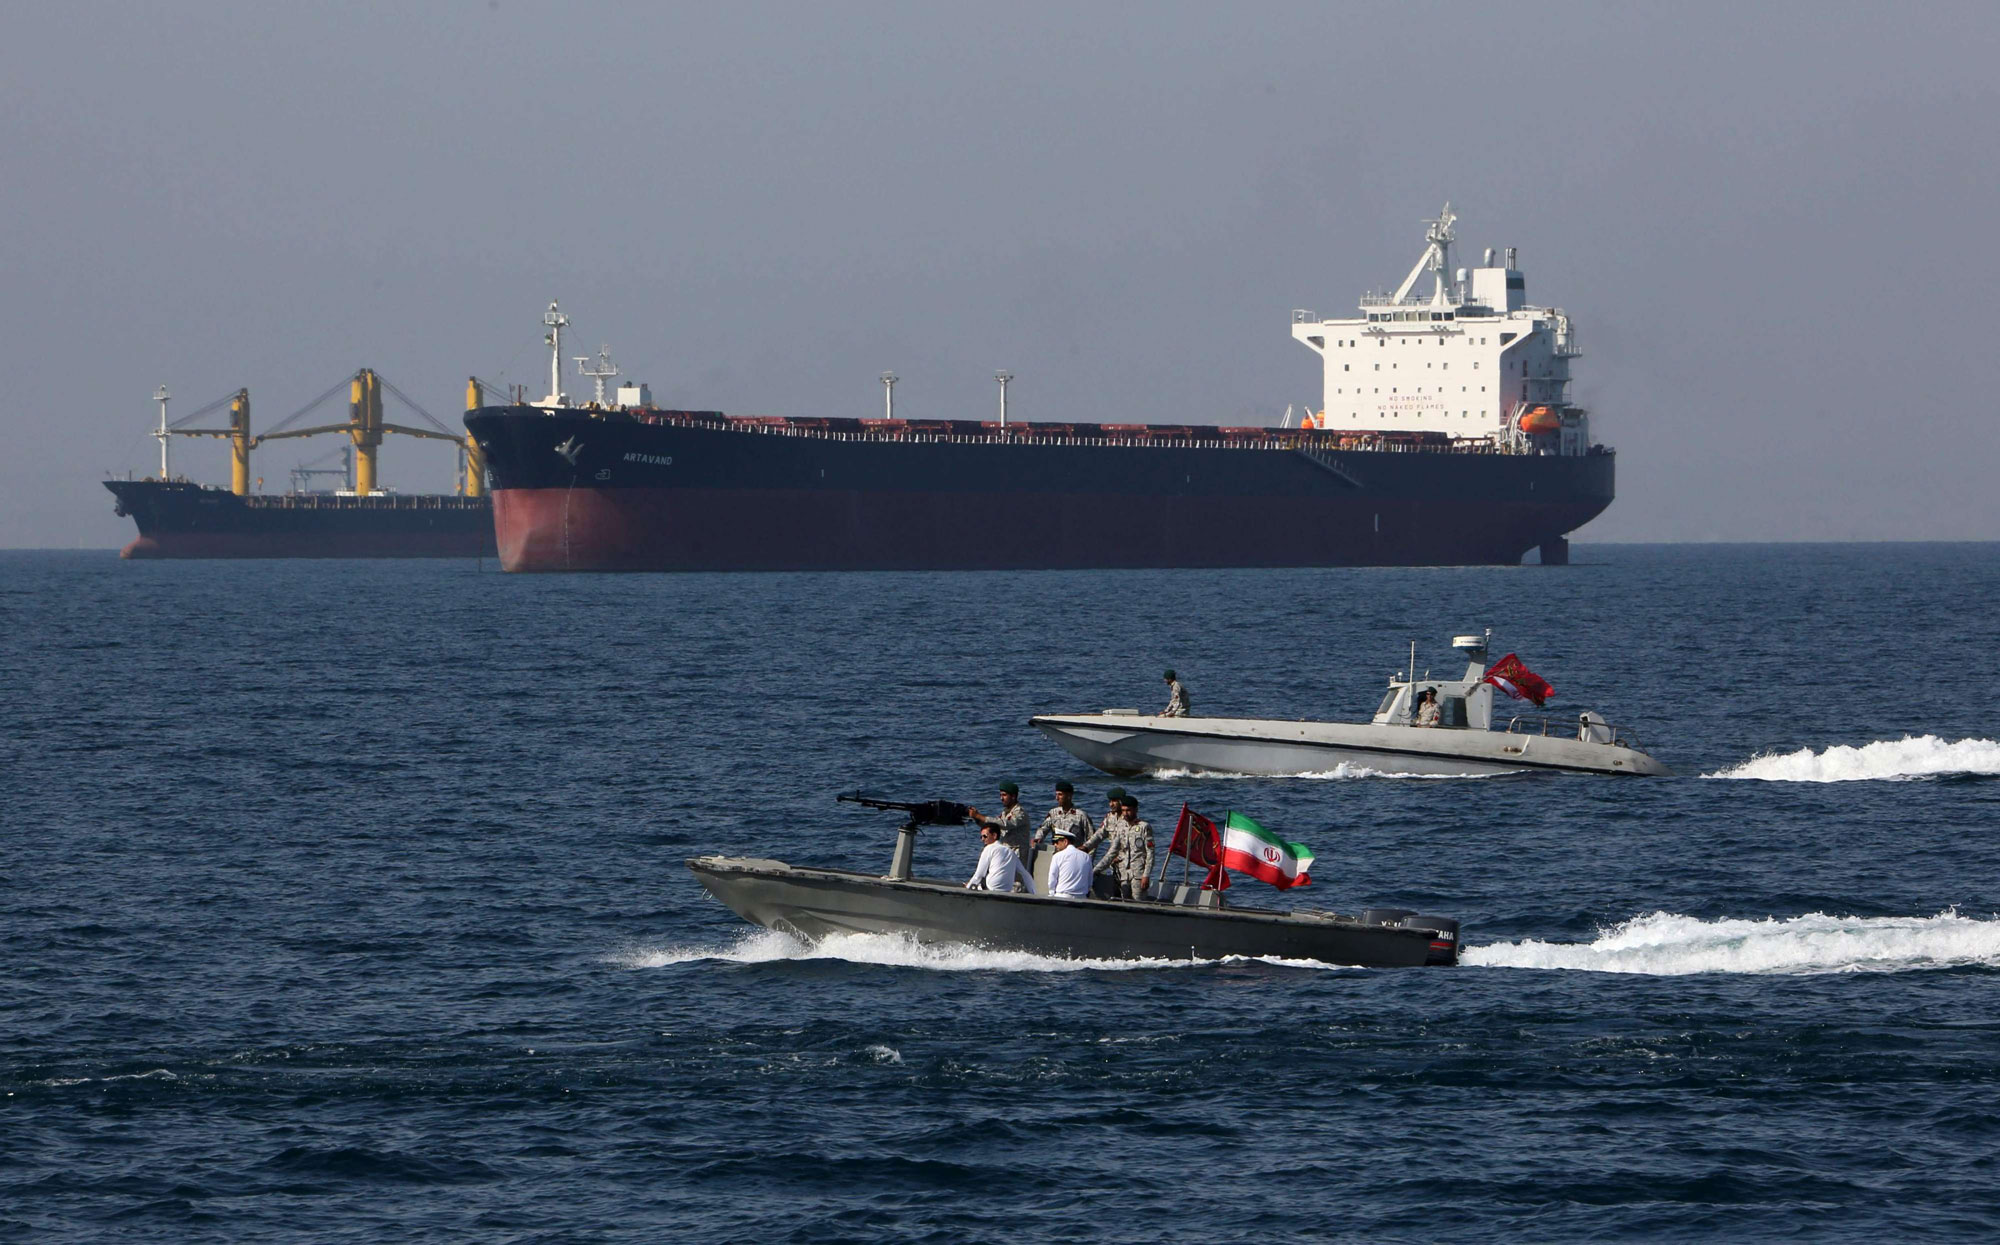 إيران تشكل أكبر تهديد للملاحة البحرية في الممرات الحيوية لنقل امدادات النفط